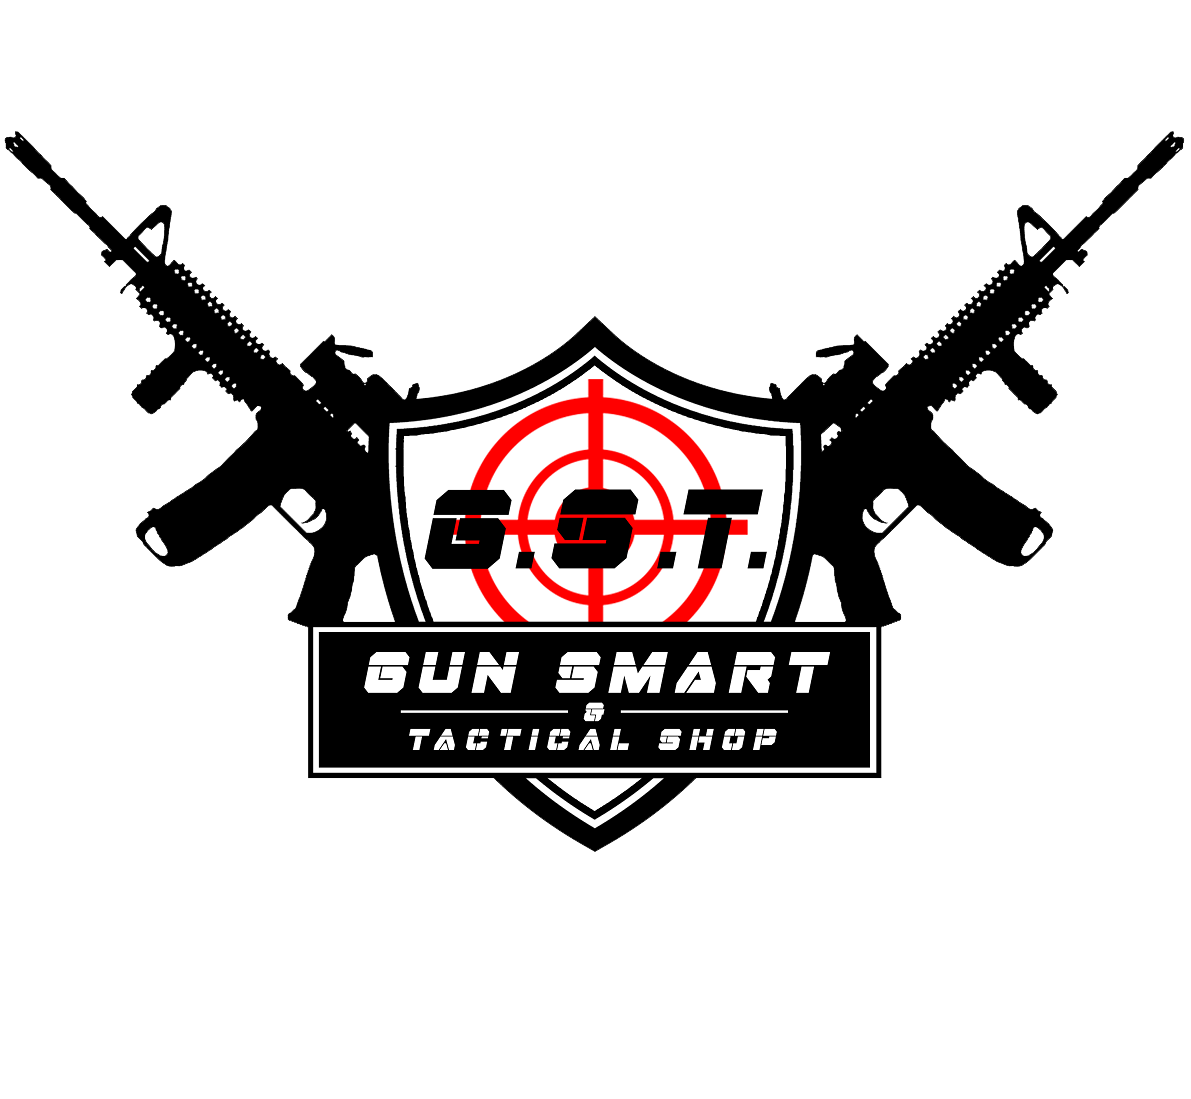 www.gunsmartshop.com